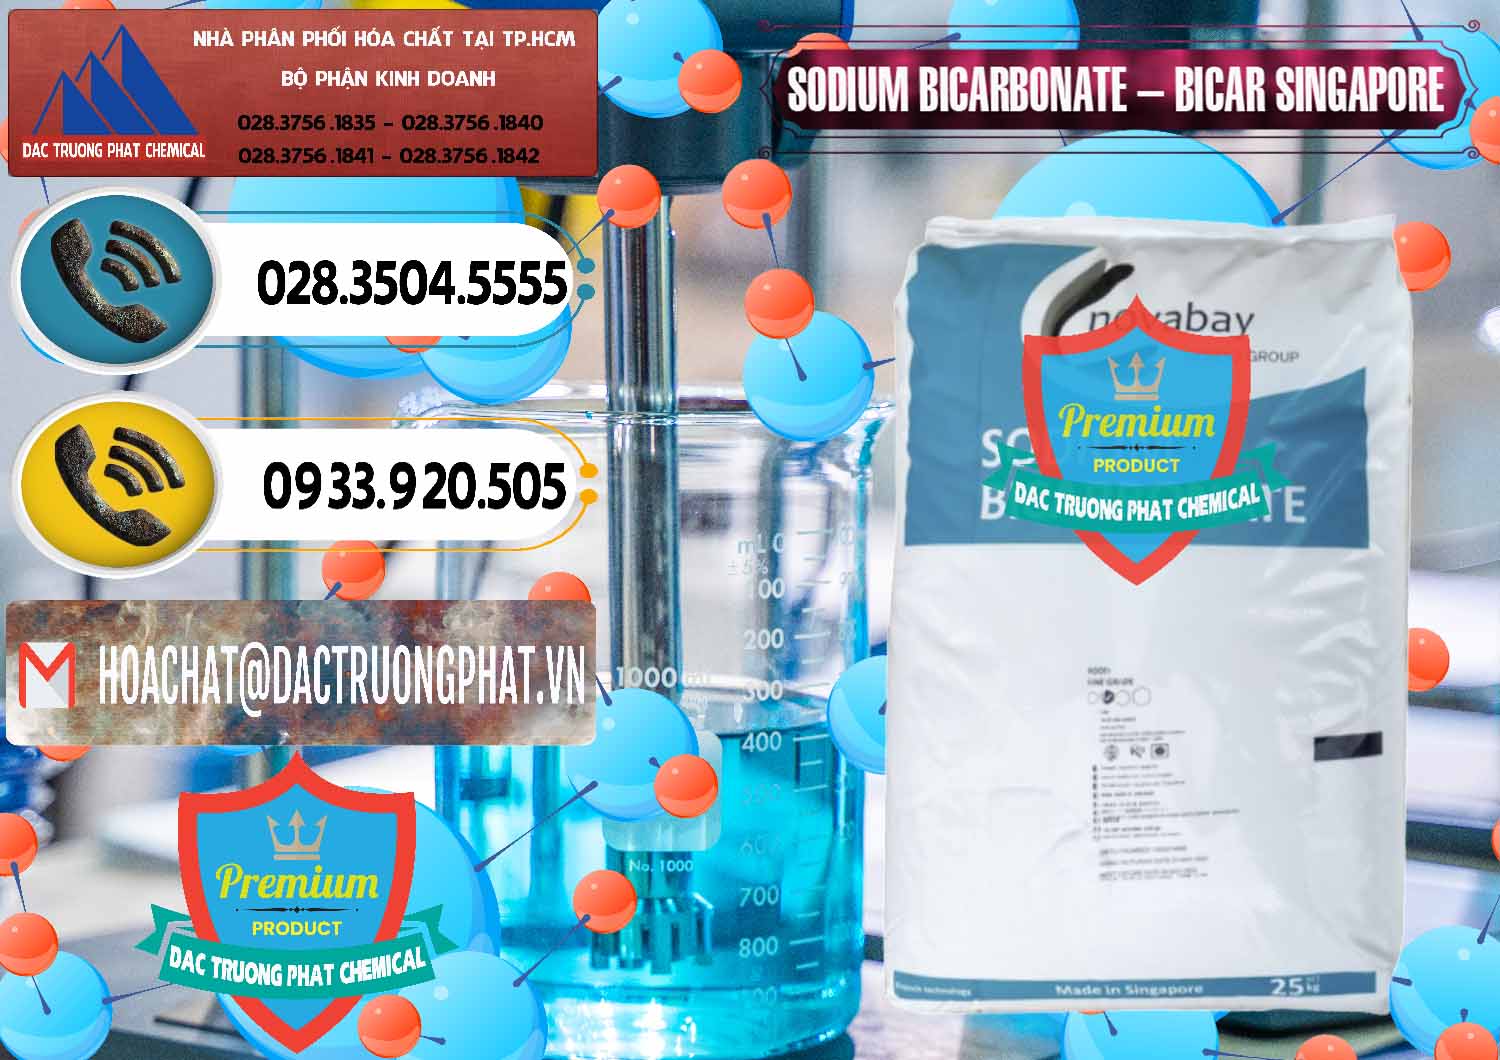 Công ty phân phối _ bán Sodium Bicarbonate – Bicar NaHCO3 Singapore - 0411 - Nơi cung cấp và phân phối hóa chất tại TP.HCM - hoachatdetnhuom.vn